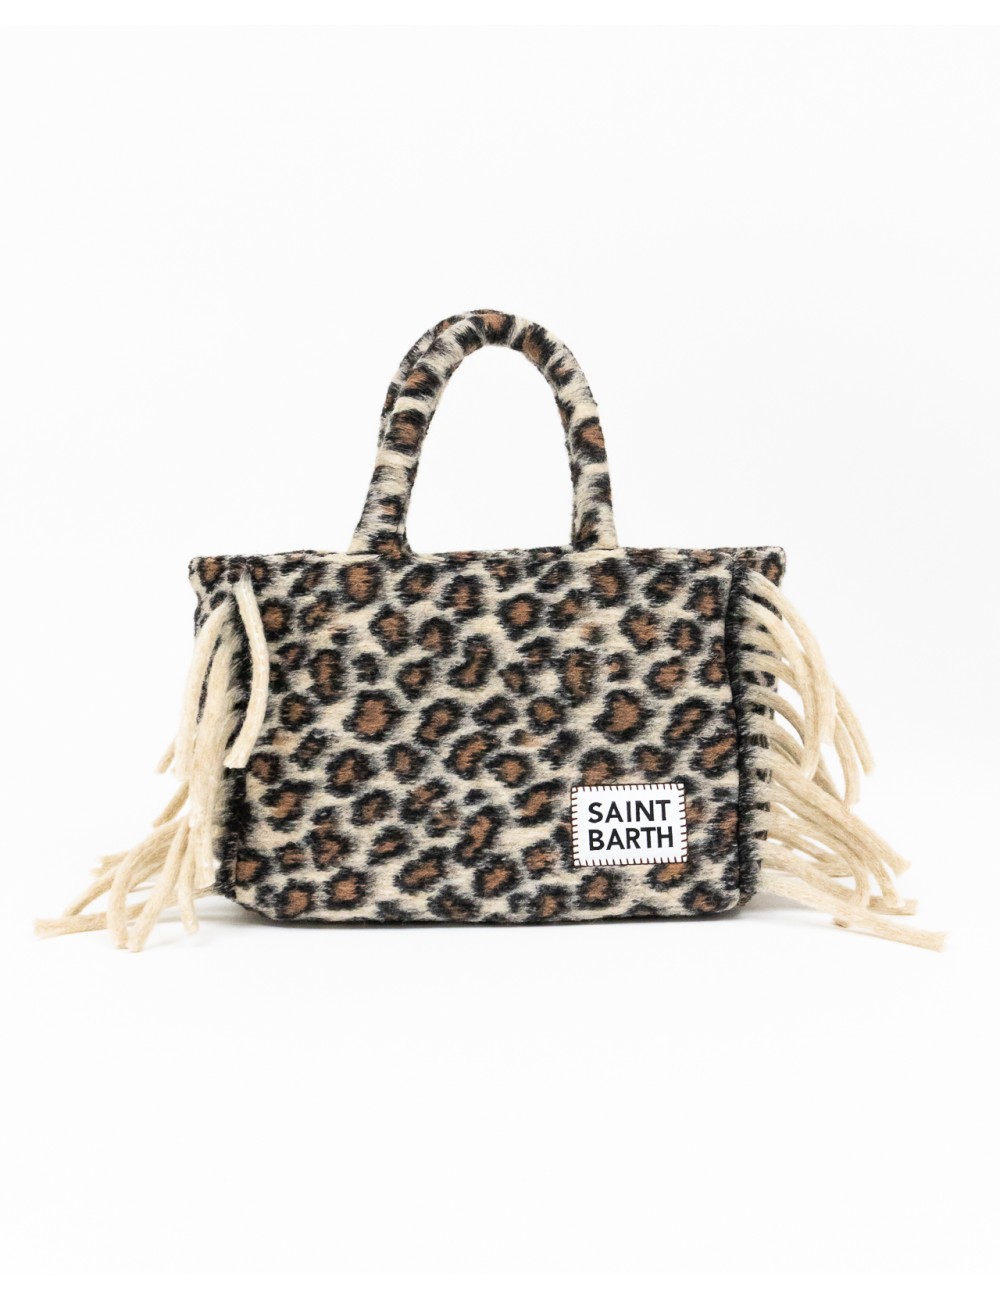 saint barth bag COLETTE BLANKET 208C leopard pattern front